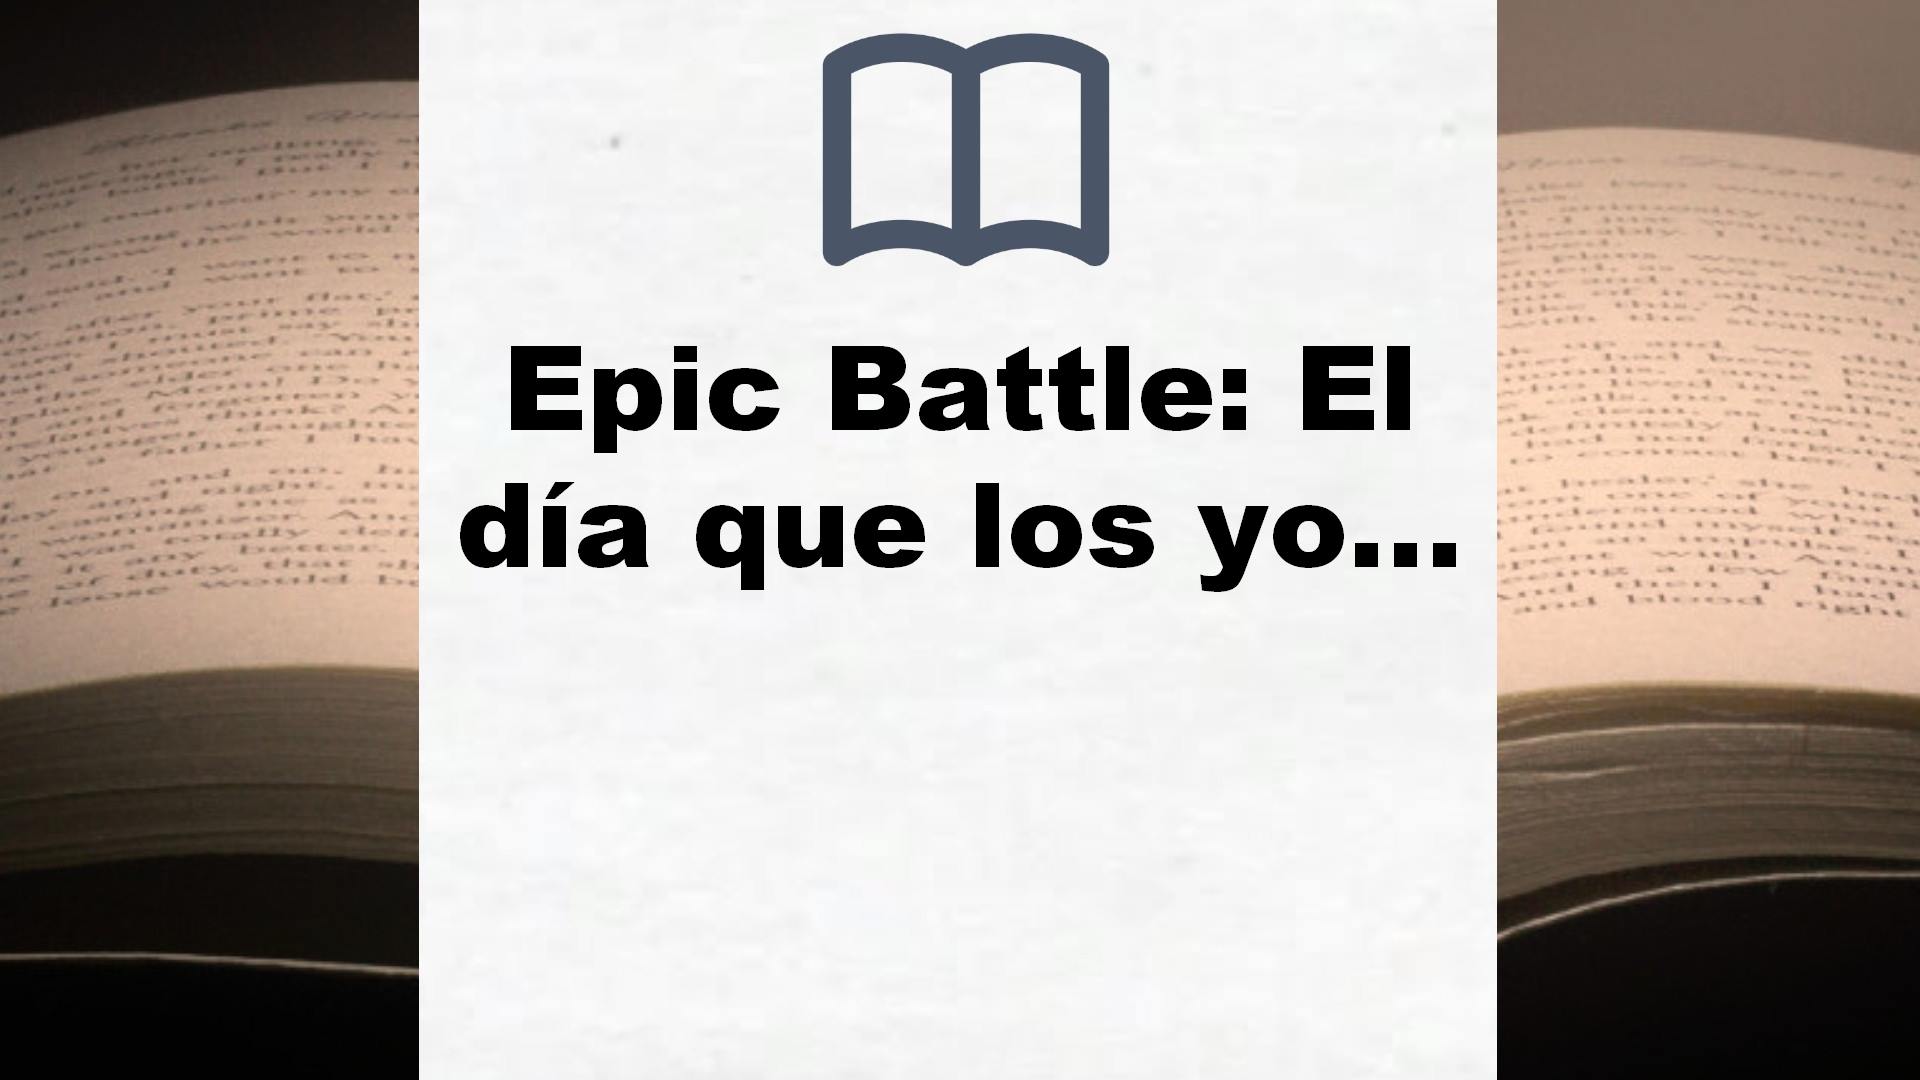 Epic Battle: El día que los youtubers salvaron el mundo (4You2) – Reseña del libro